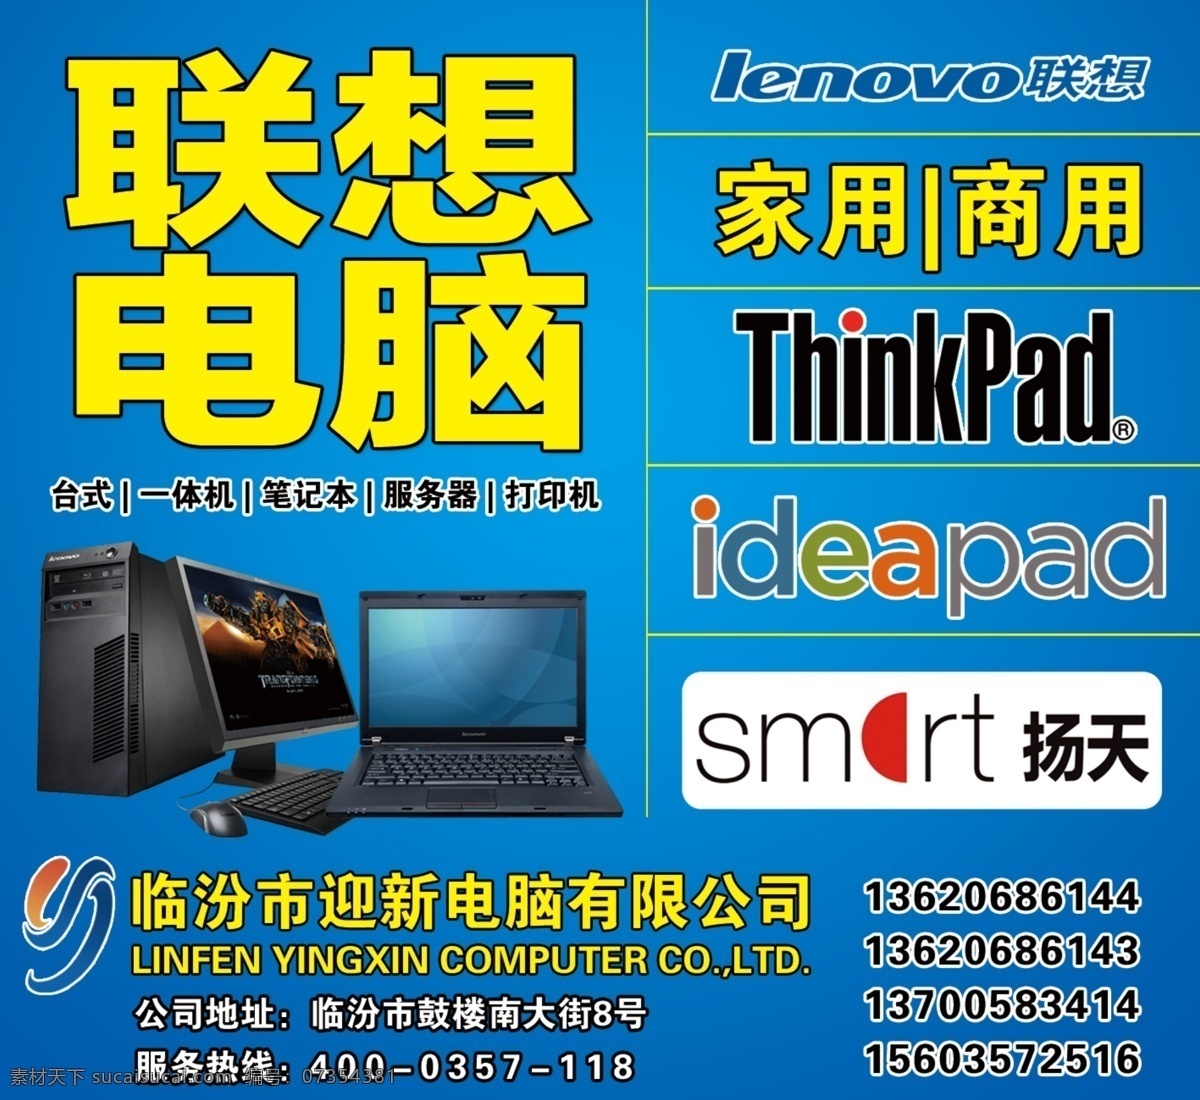 联想电脑 家用 商用 电脑 台式 笔记本 lenovo thainkpad smart 扬天 渠道 地址 电话 展板模板 广告设计模板 源文件